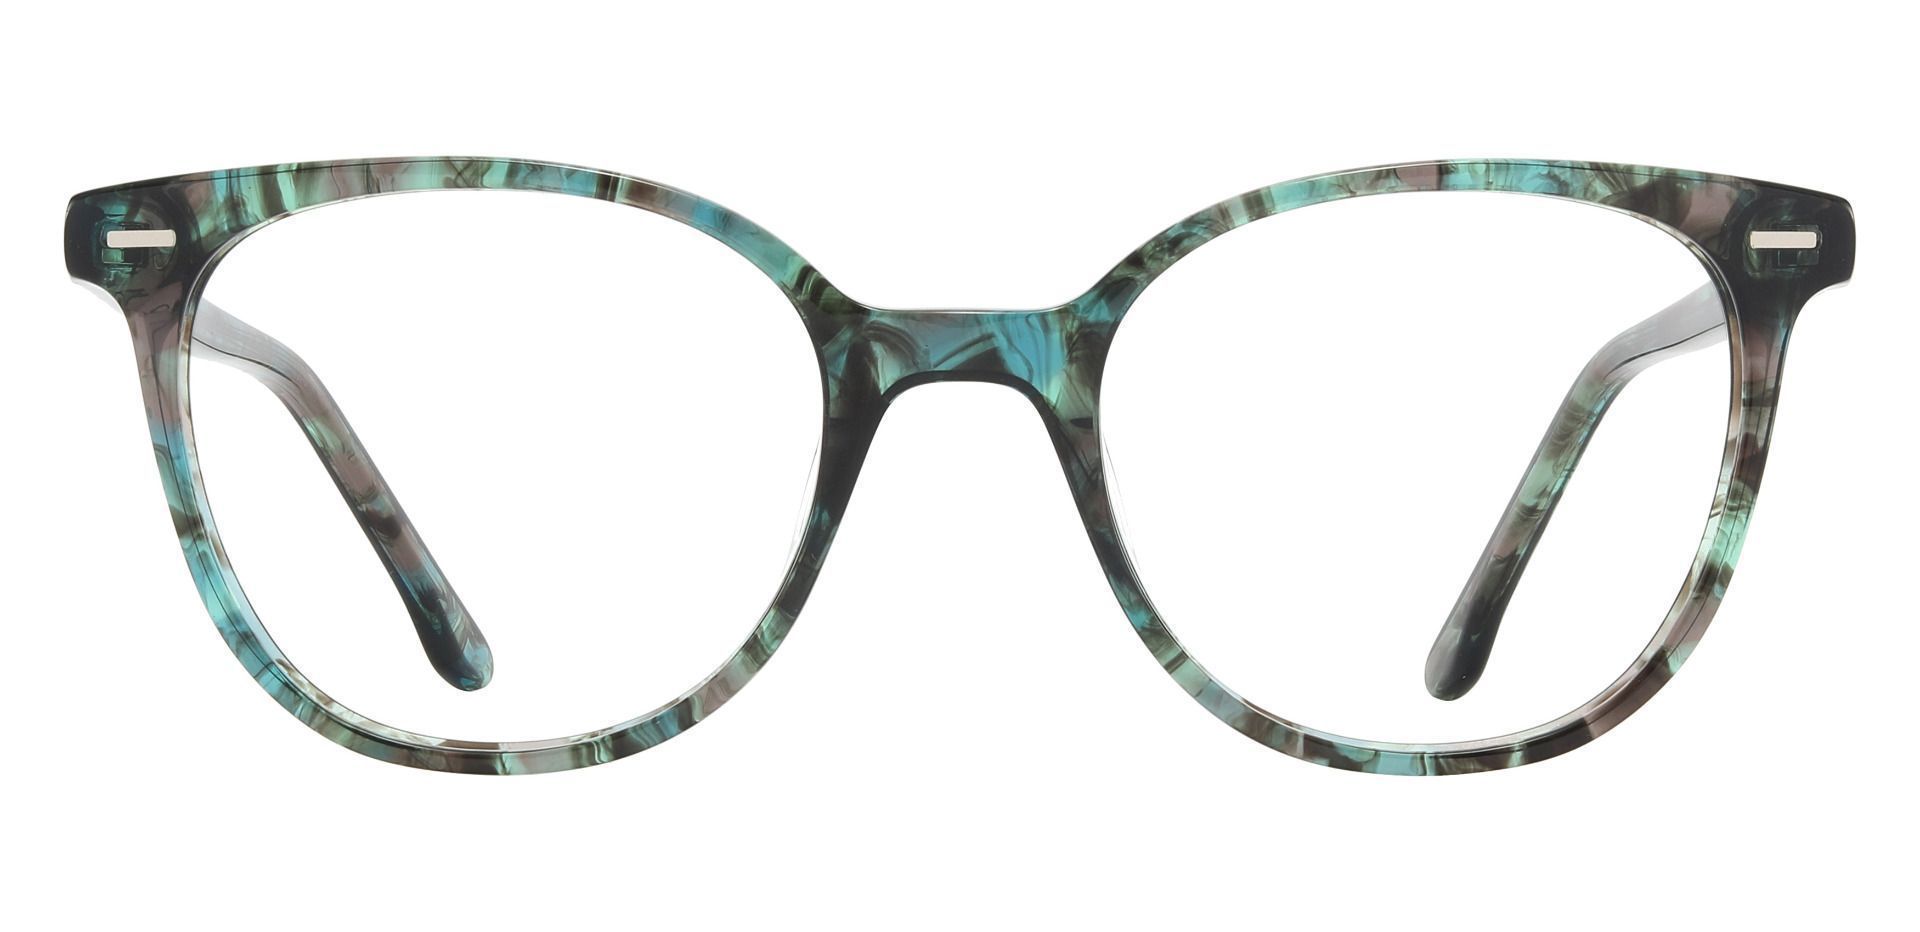 Chili Oval Progressive Glasses - Green